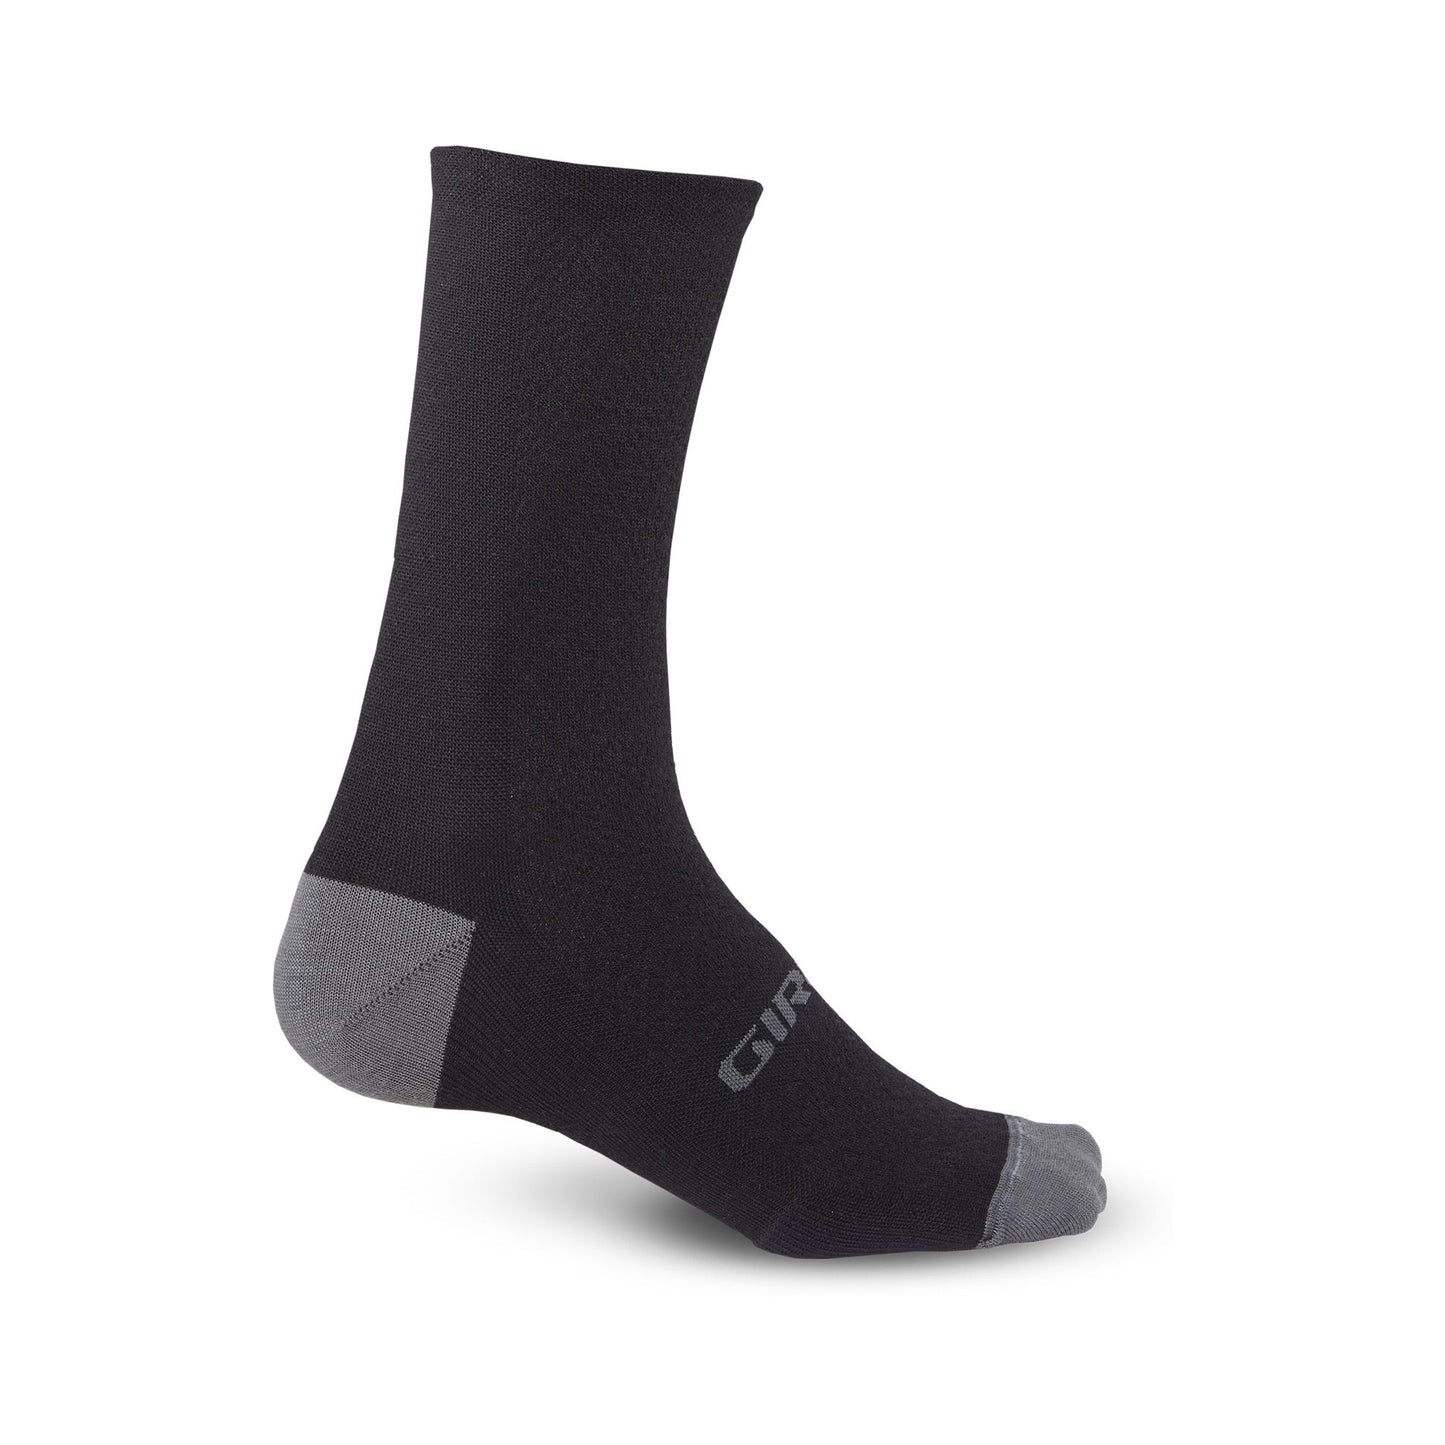 Giro HRc+ Merino Wool Sock Black Charcoal Bike Socks